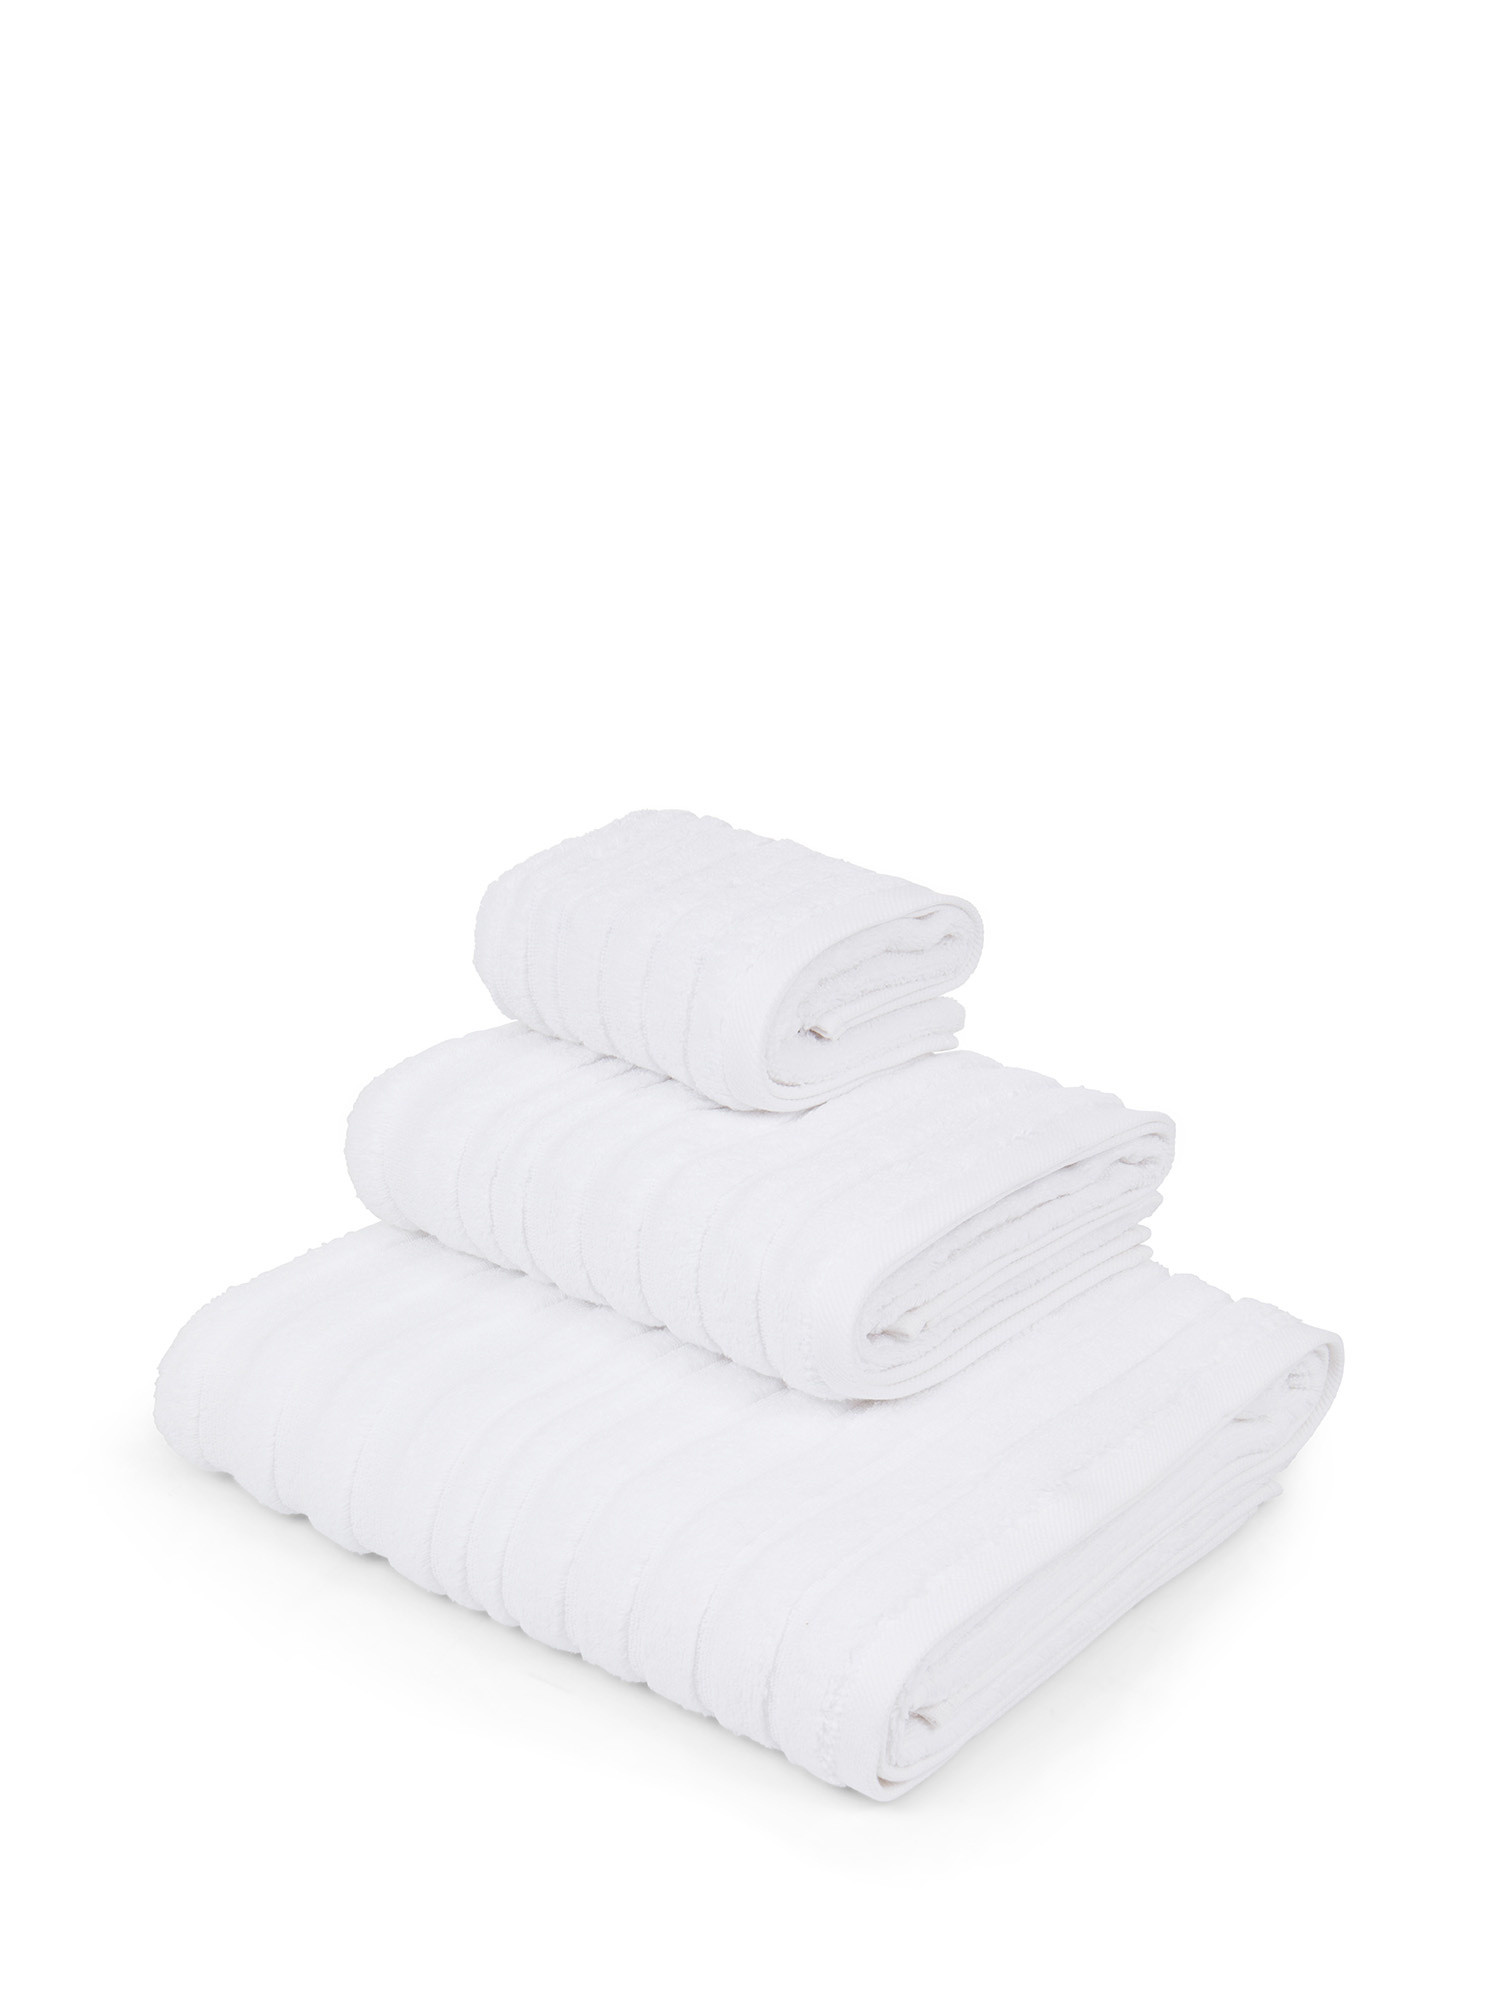 Asciugamano in spugna di cotone con righe a rilievo, Bianco, large image number 0